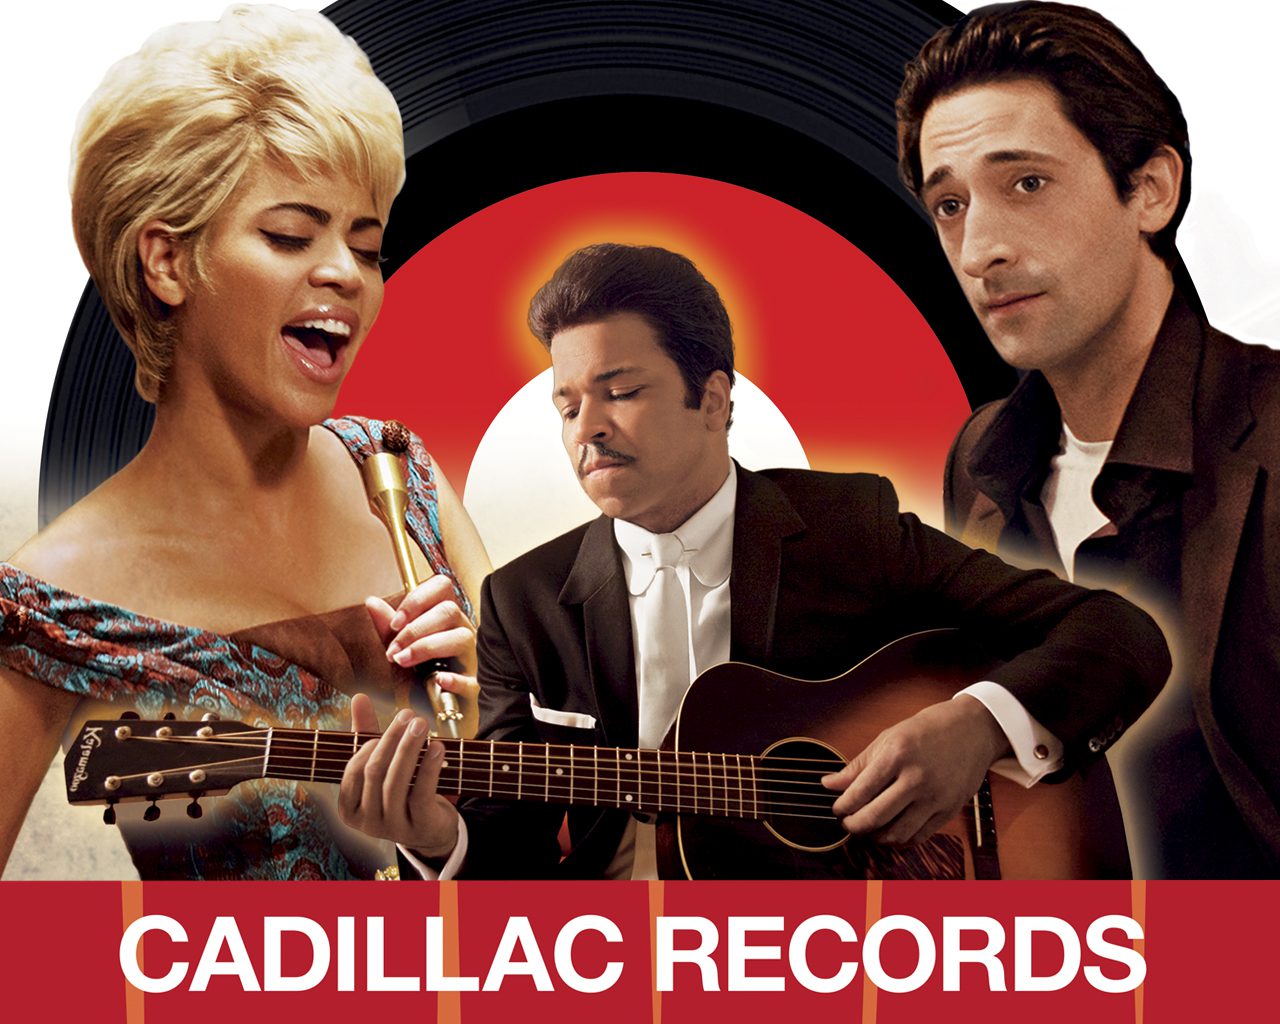 Cadillac Records [FULL MOVIE]